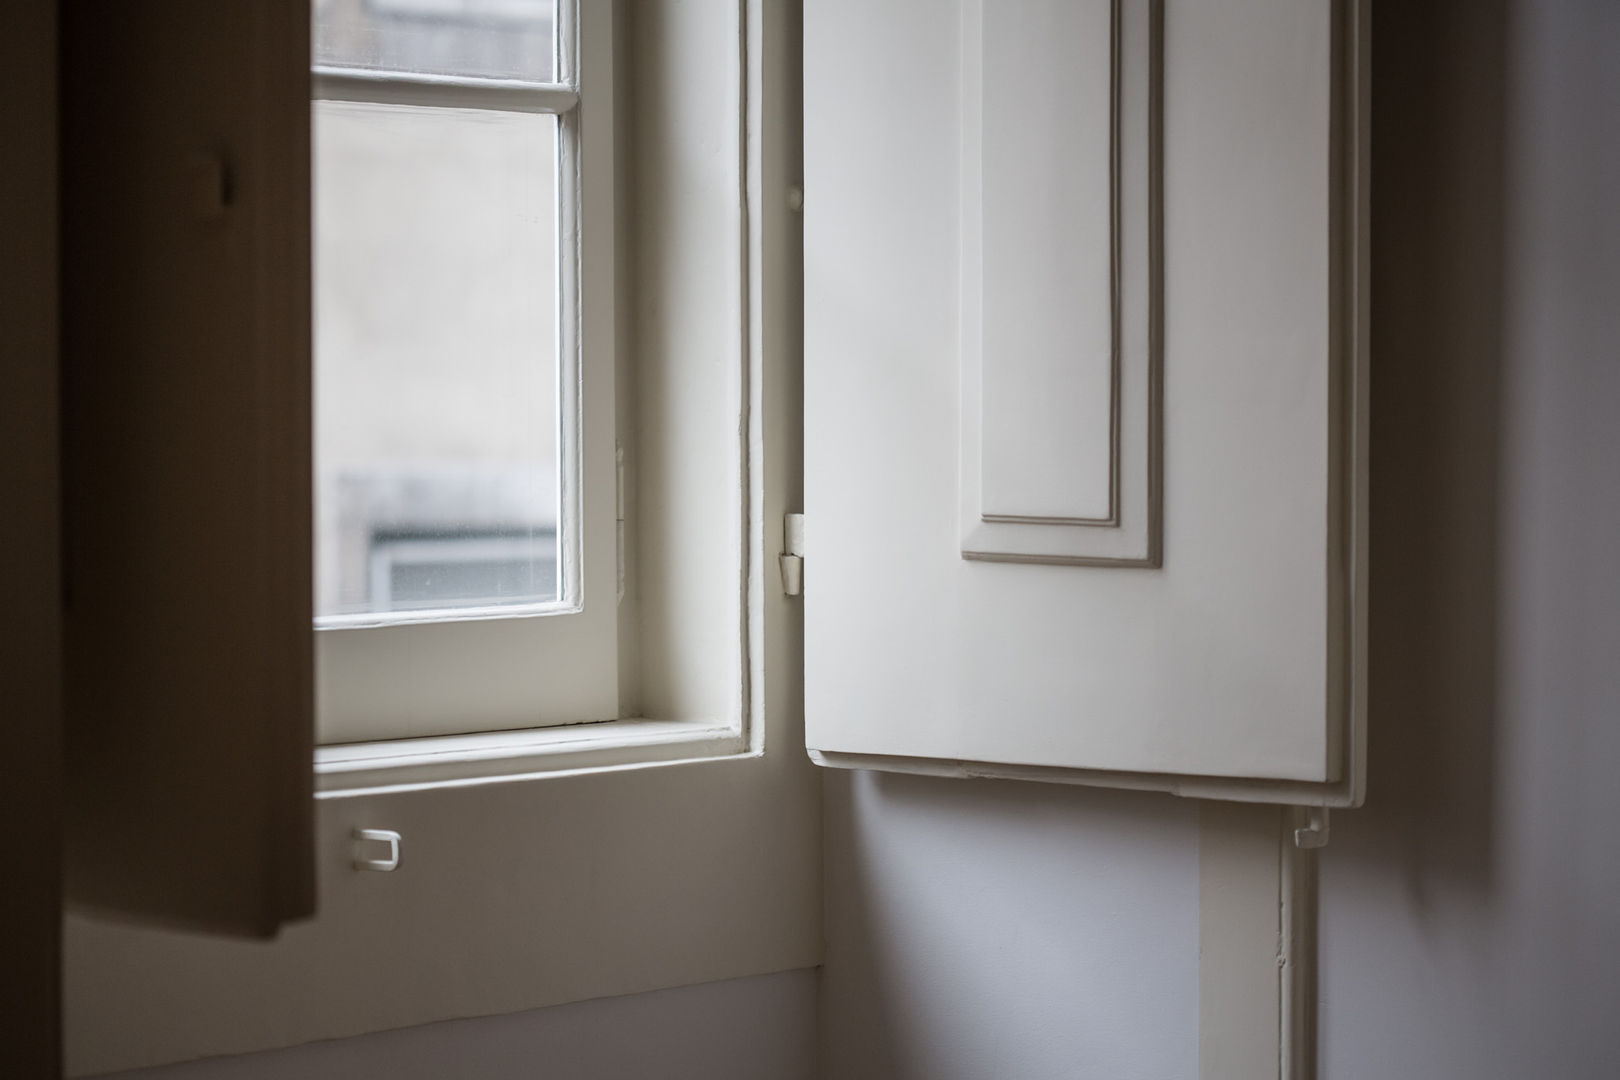 Reabilitação de apartamento pombalino, Architect Your Home Architect Your Home Puertas y ventanas clásicas